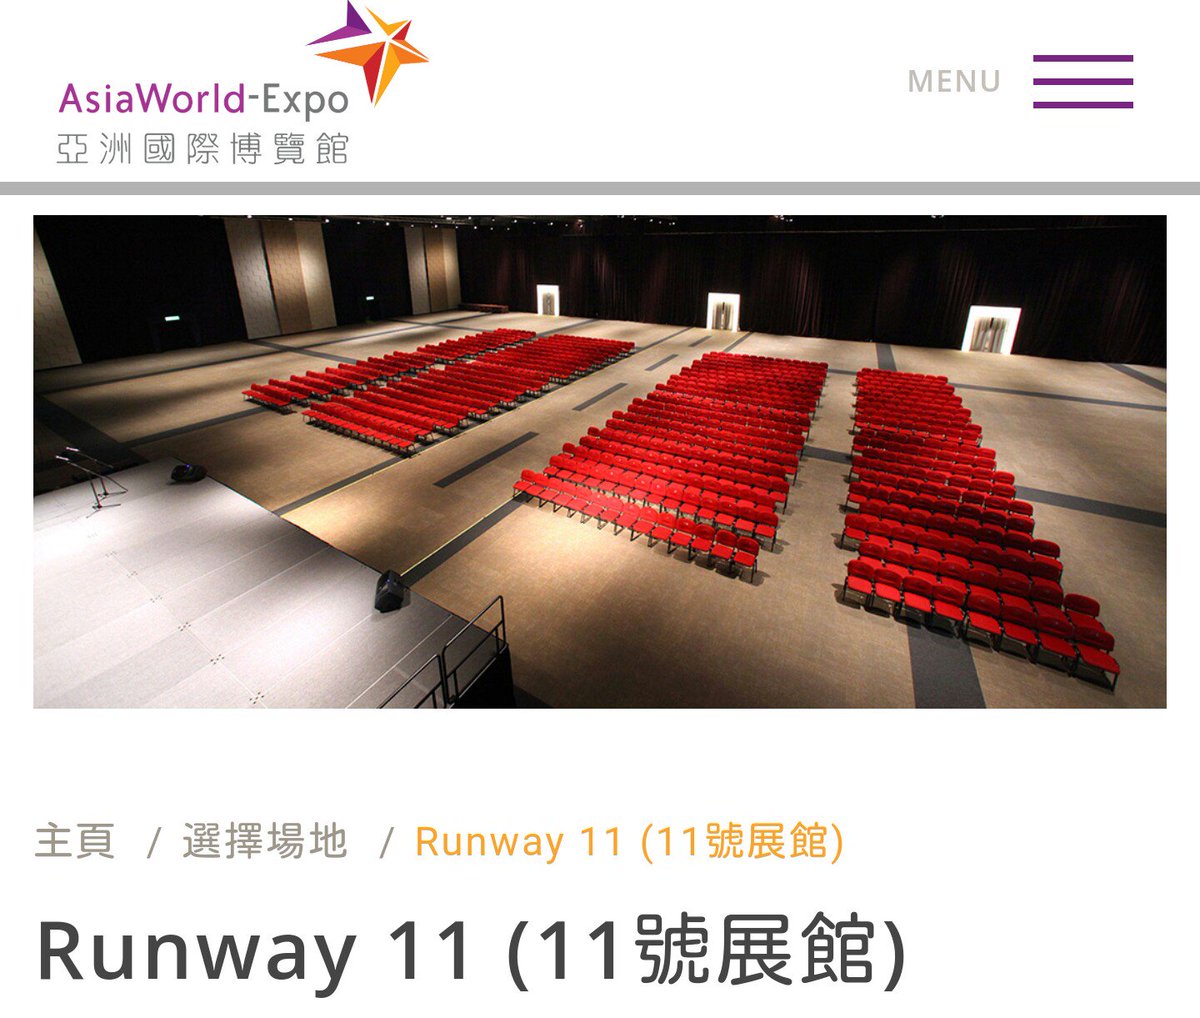 Rikiya 9月29日 金 にライブが行われる予定の香港 亜洲国際博覧館の11号館 Asiaworld Expo Runway 11 の詳細を確認中なう Nmb48 アジアツアー アジアワールドエキスポ